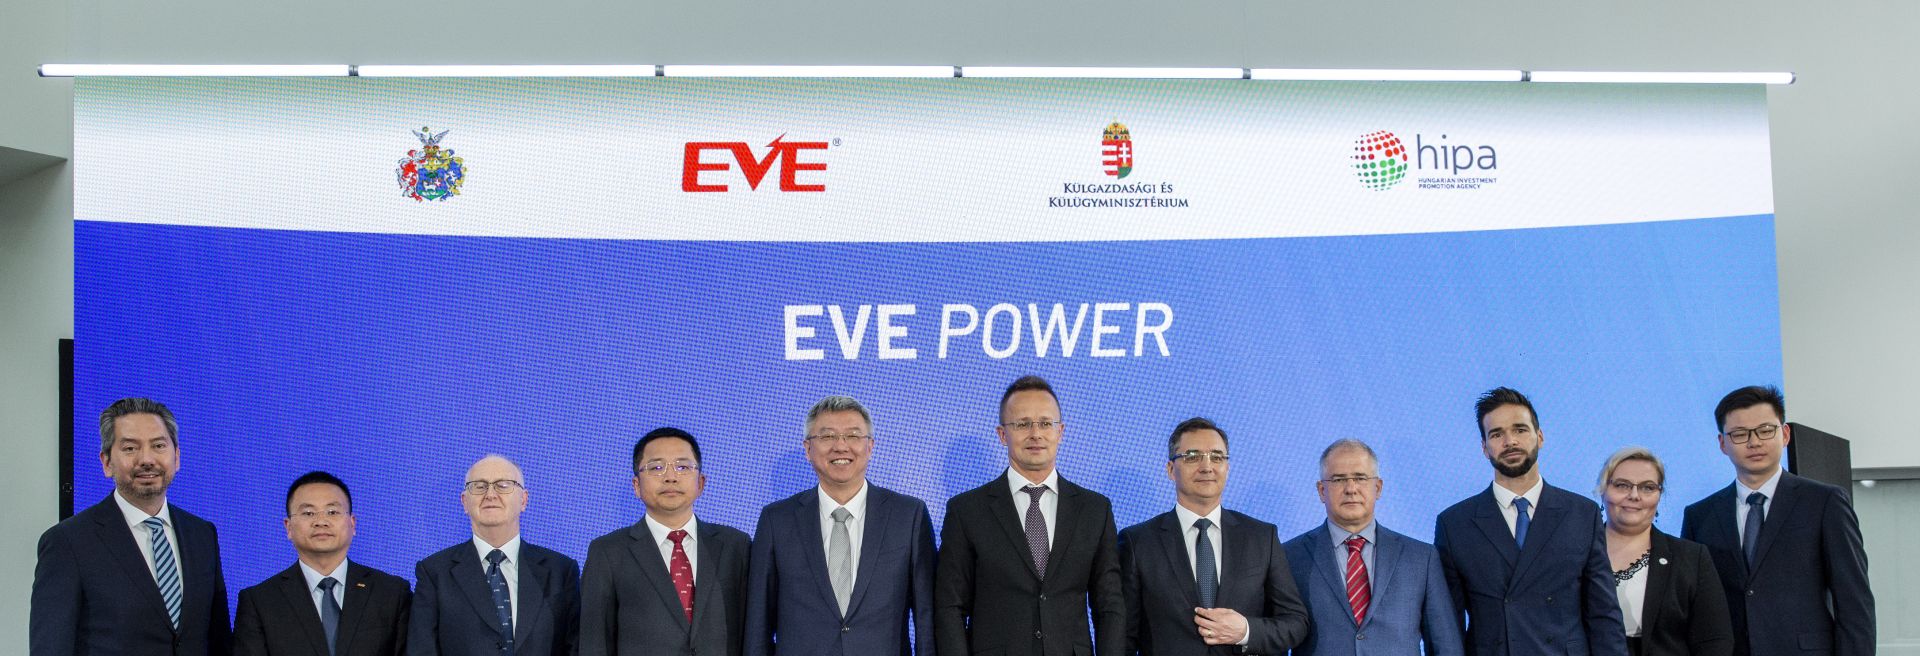 EVE Power Teams Up With BMW In Debrecen To Supply iFactory Next Door